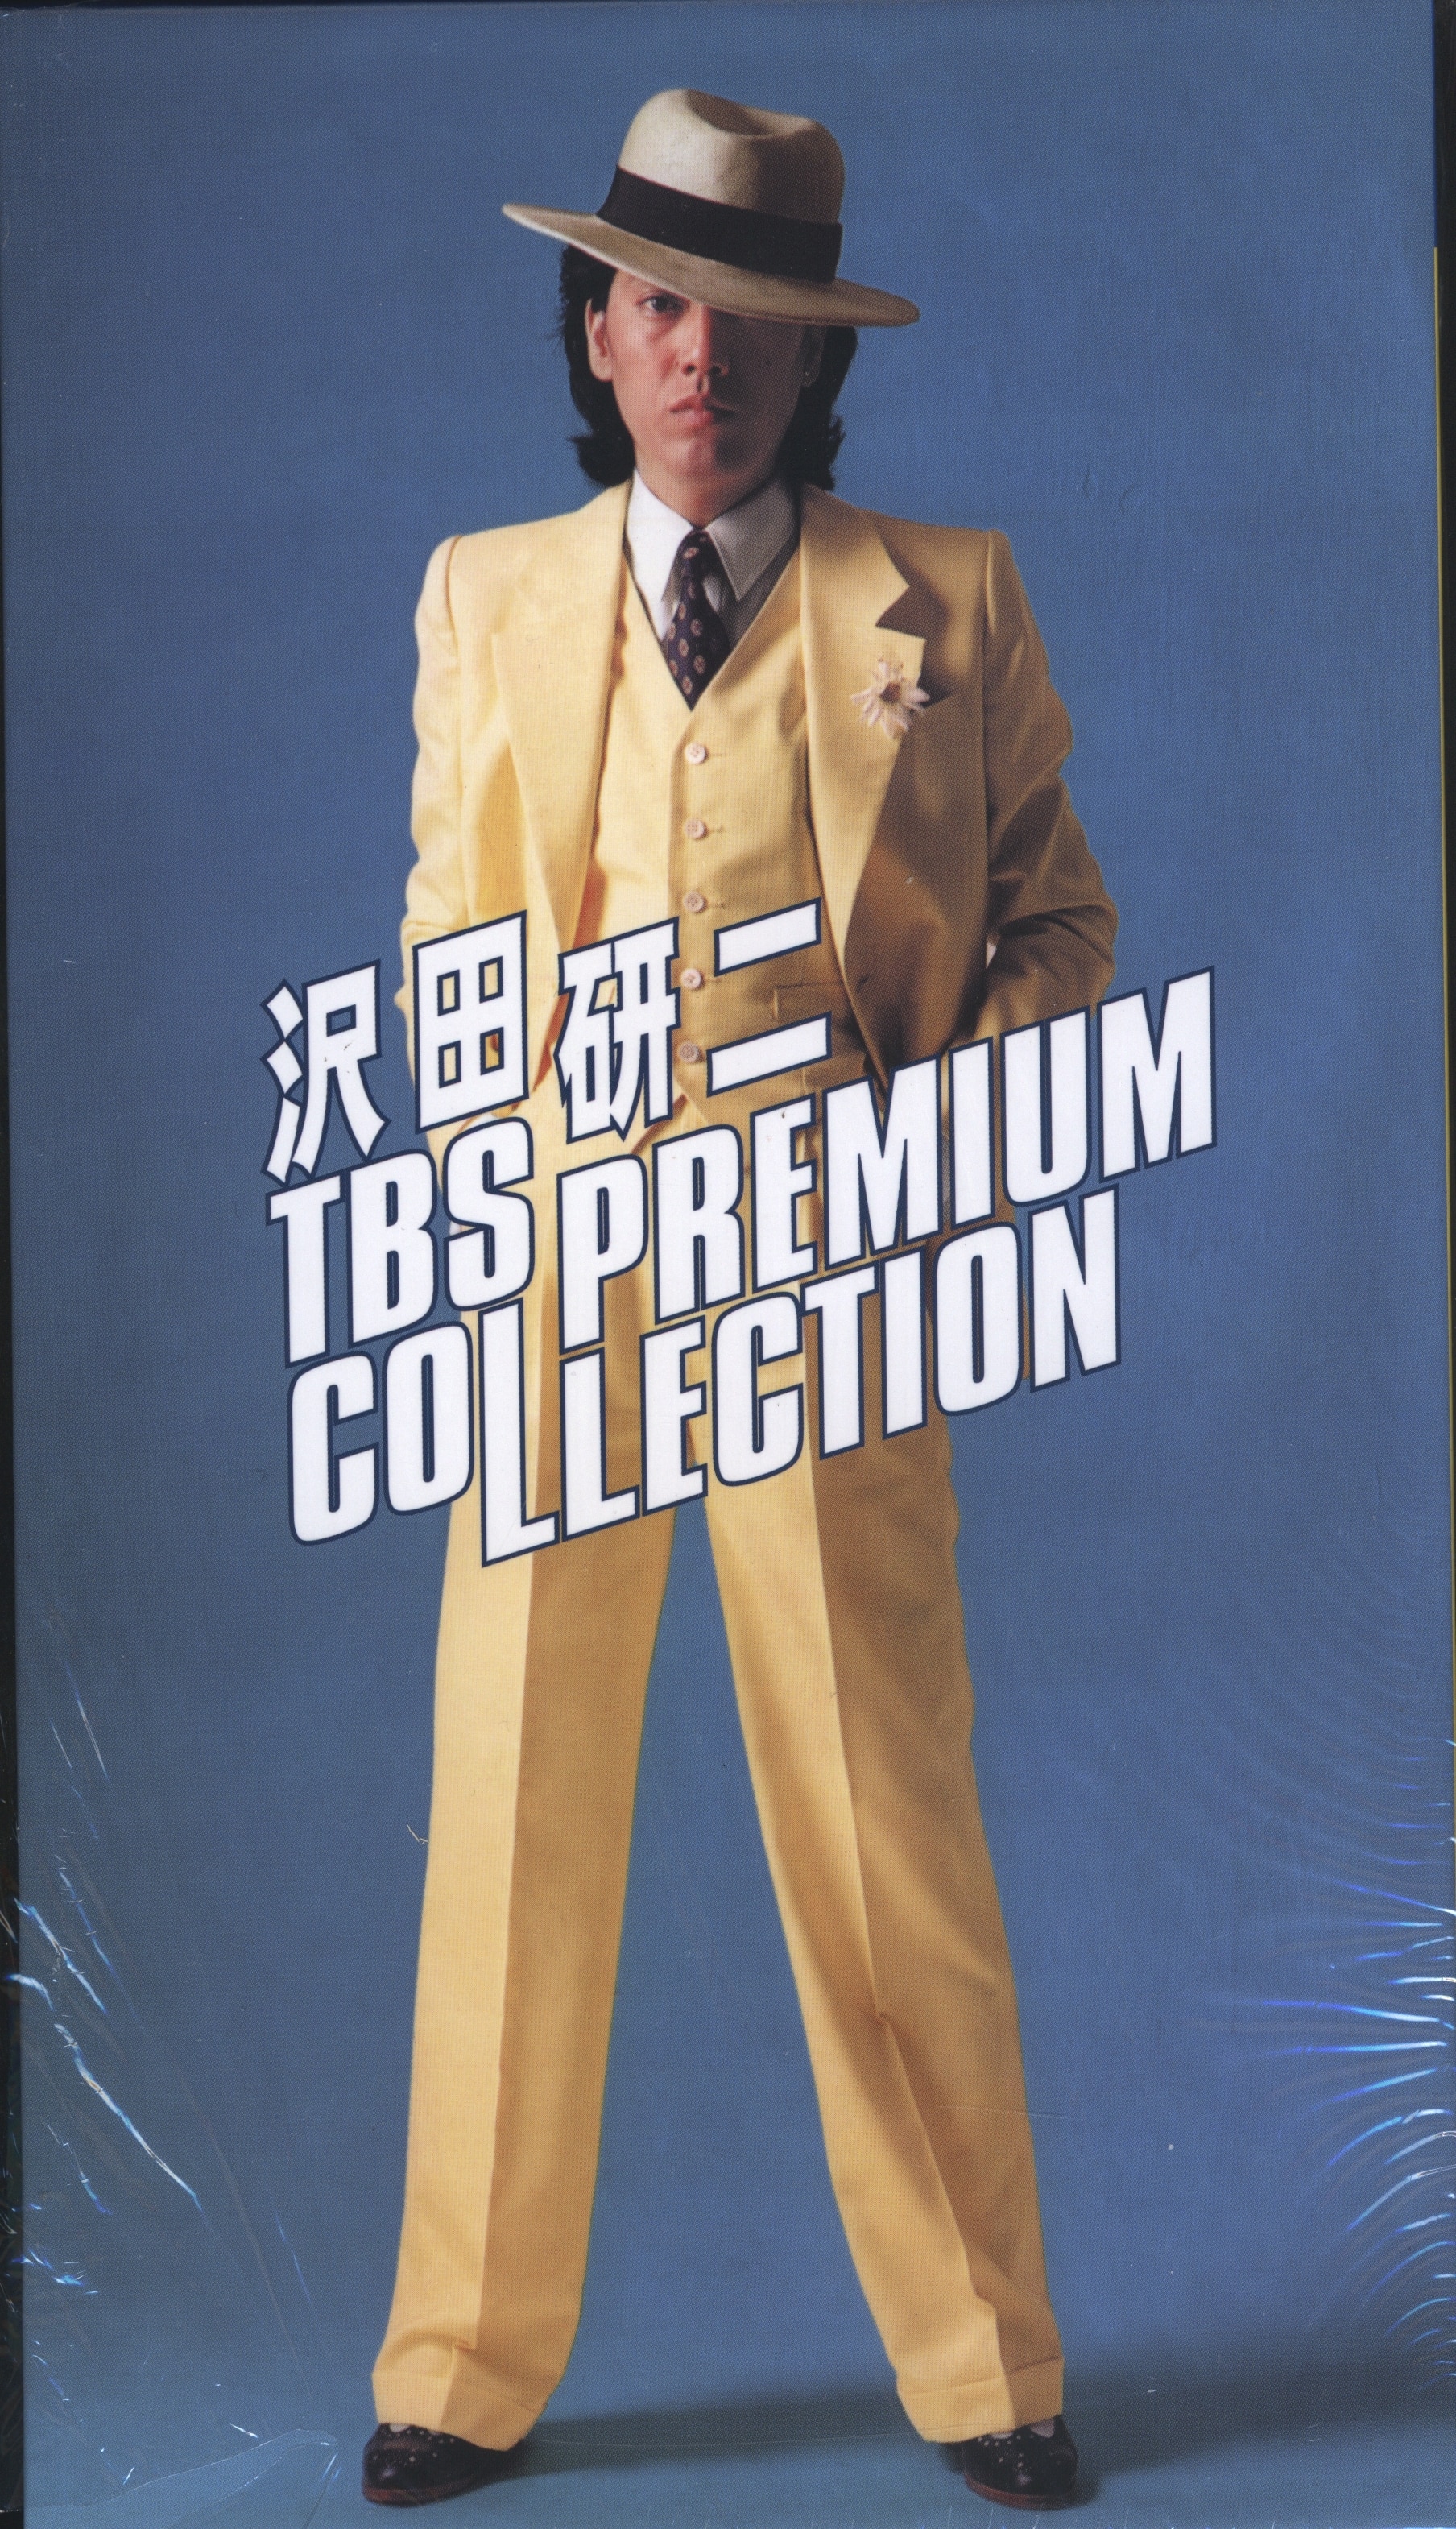 沢田研二 TBS PREMIUM COLLECTION 7枚組DVD BOX - TVドラマ